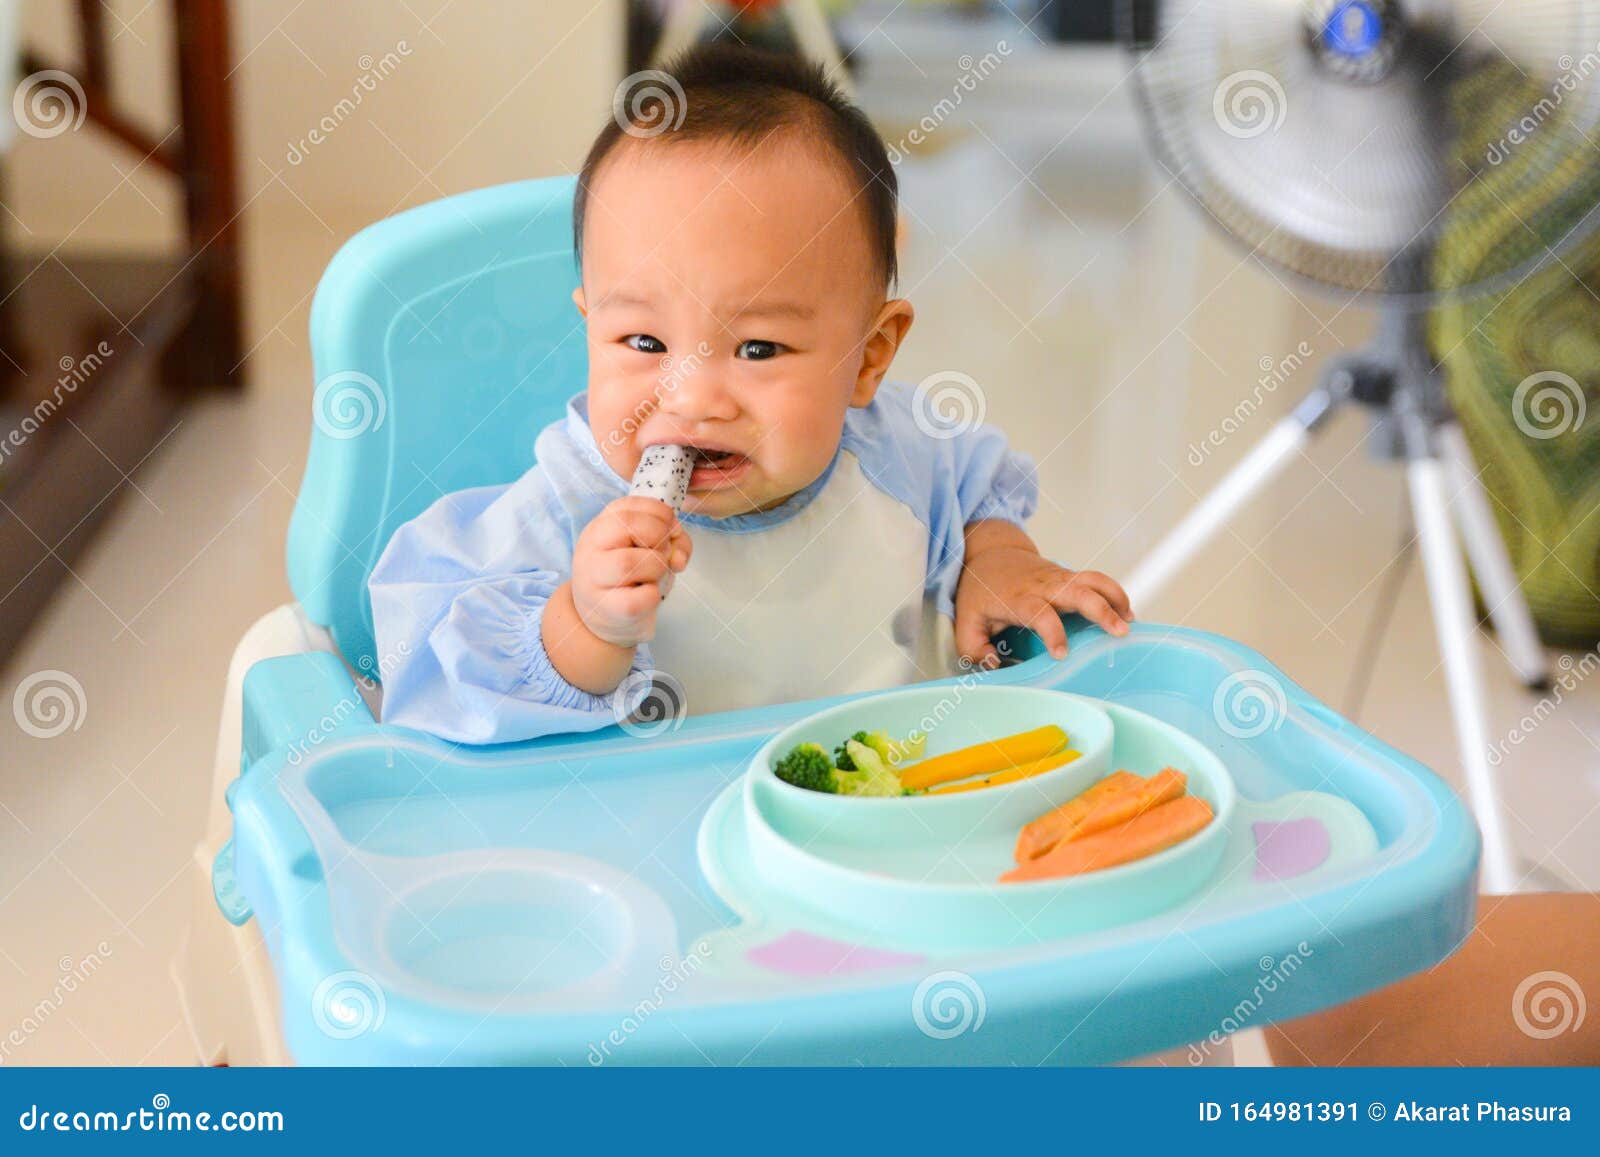 Baby Led Weaning (BLW) Comida Para Comer Del Bebé Fotos, retratos, imágenes  y fotografía de archivo libres de derecho. Image 176783908